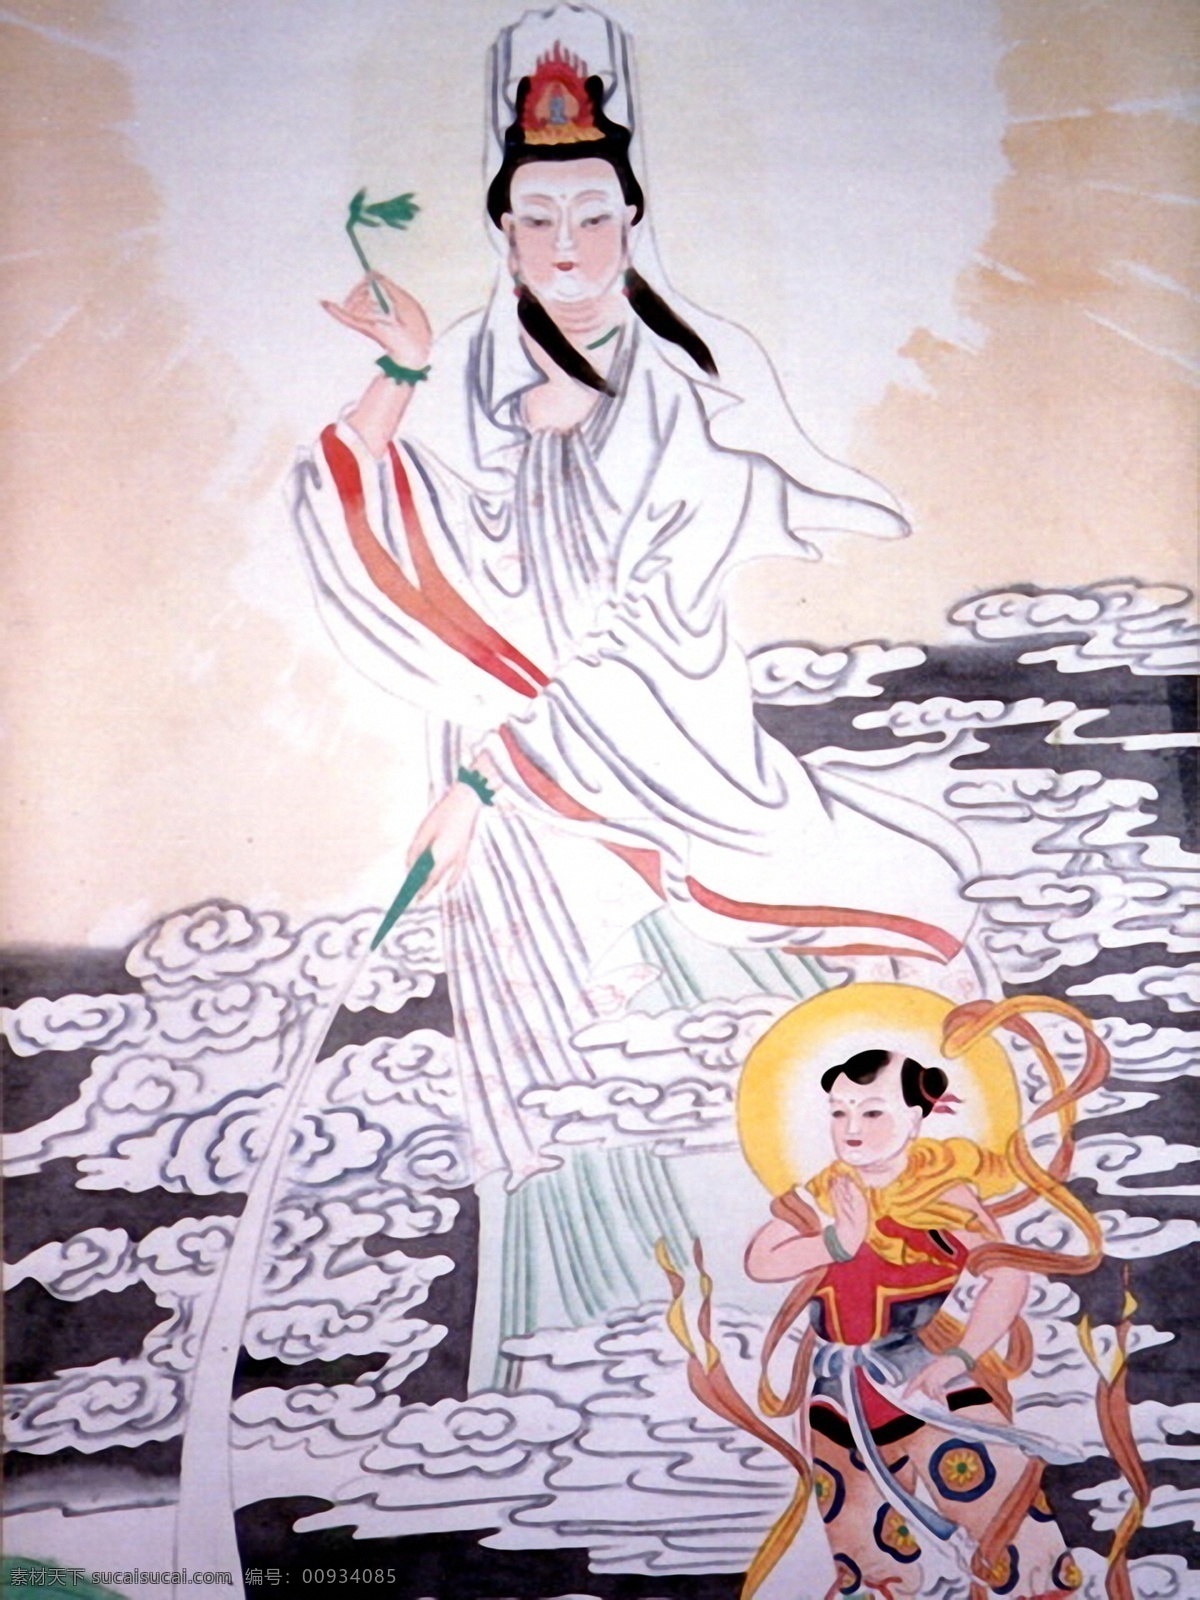 观音佛像 手绘仙佛 佛教文化 中国画 设计素材 神仙佛像 中国画篇 书画美术 白色